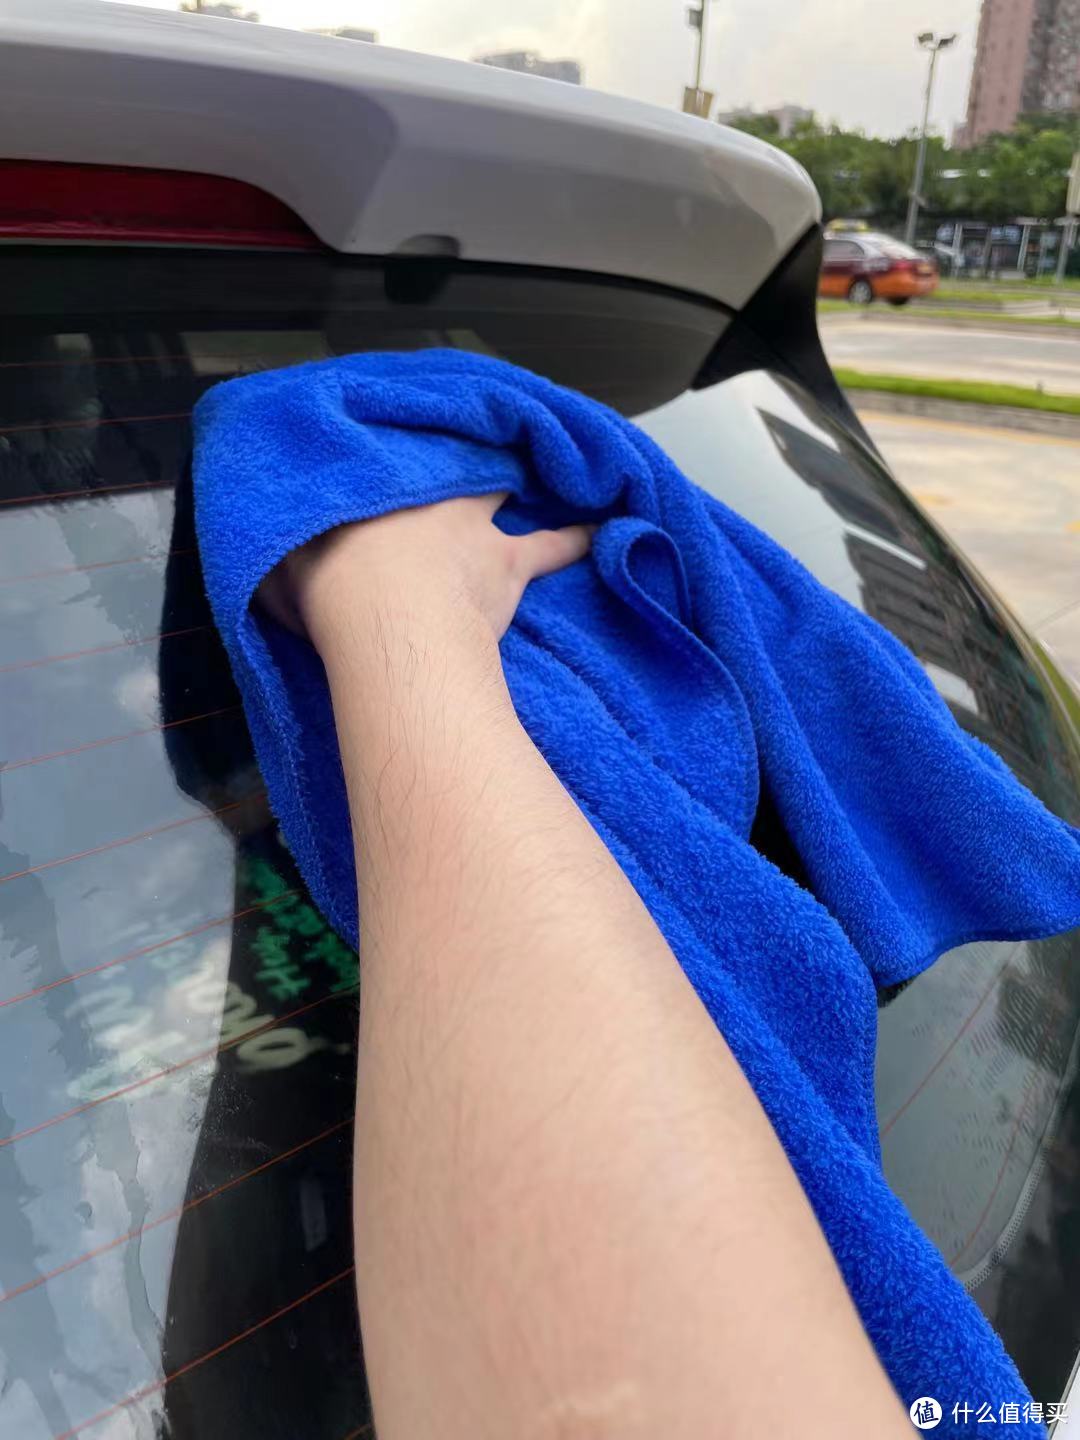 初哥的第一次洗车经历，没想到竟如此顺利，全因有这款洗车神器